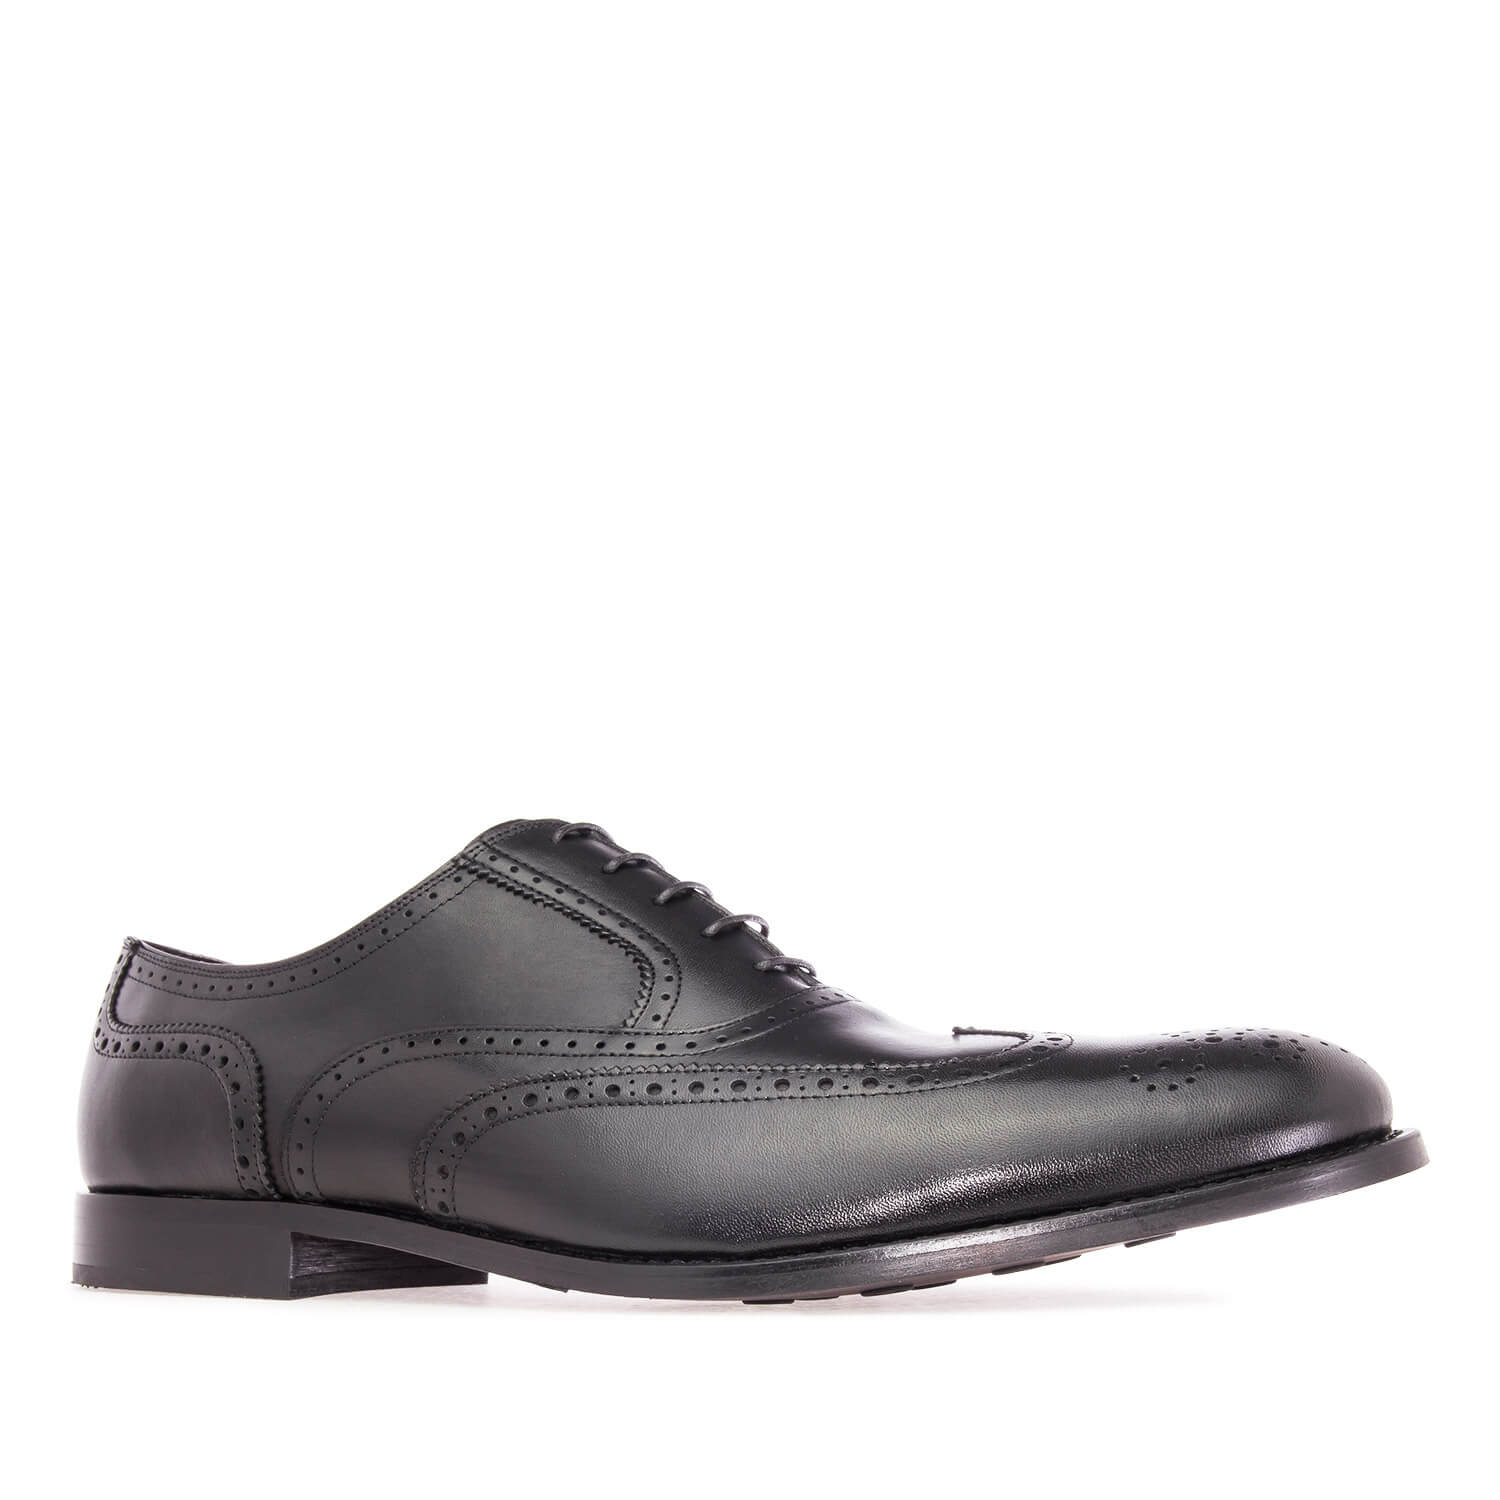 Zapato de Caballero estilo Oxford en Piel Negro 